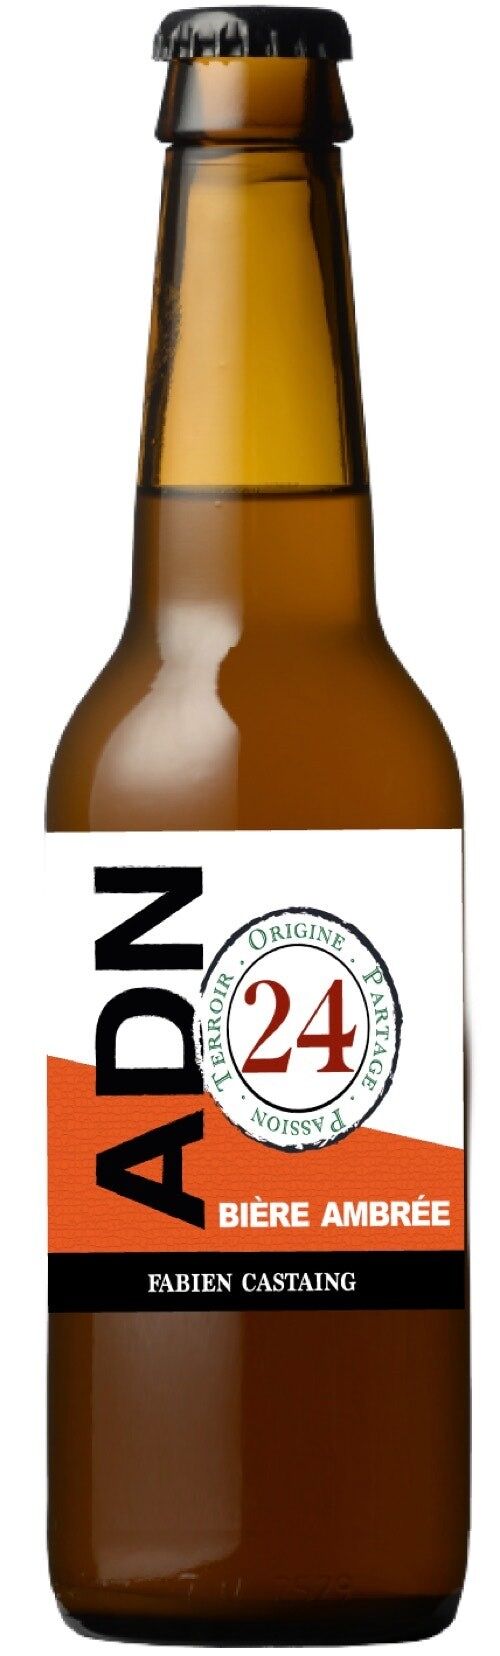 Bière Ambrée ADN 24 - 33cl